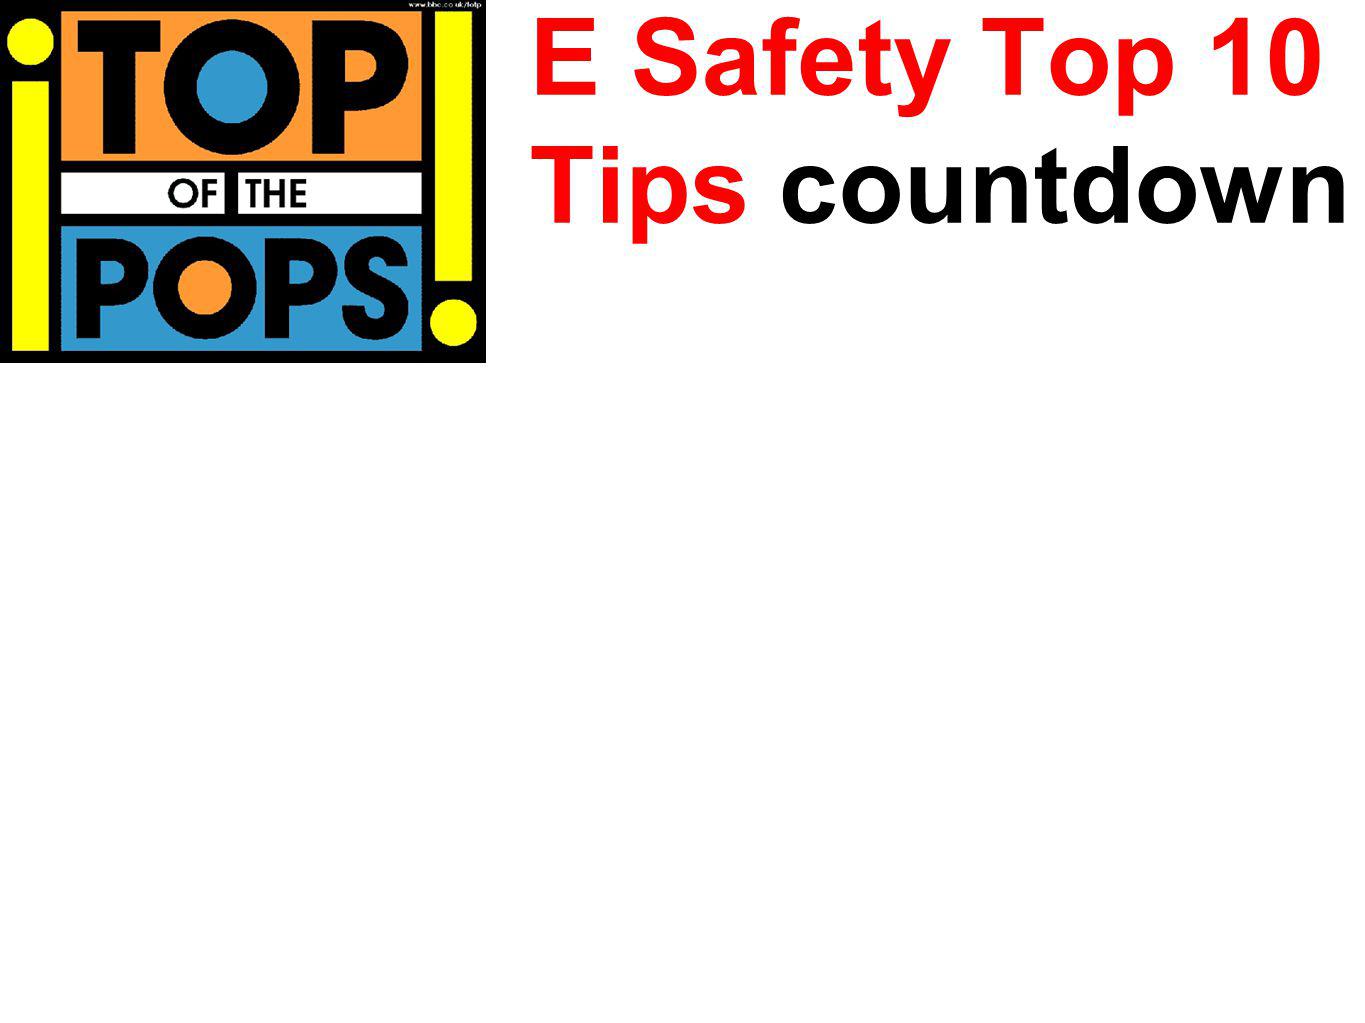 E Safety Top 10 Tips countdown